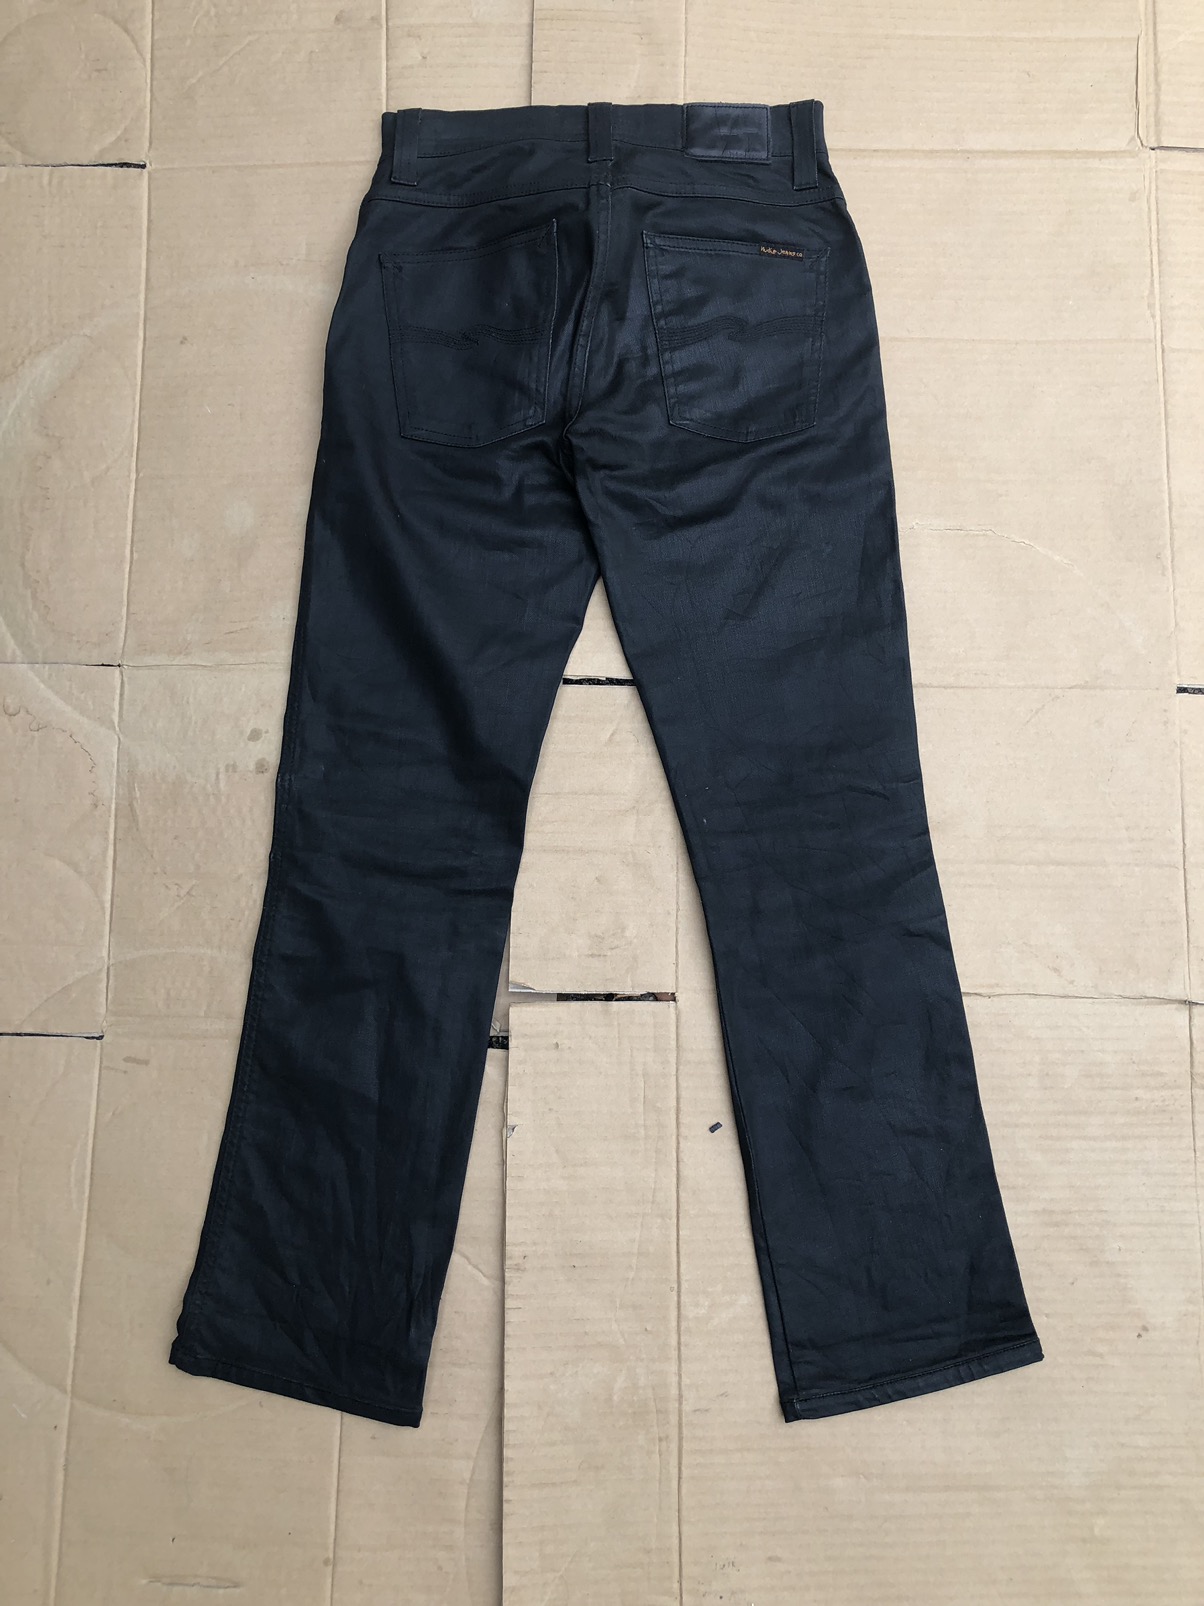 Nudie jeans slim Jim dry black coated Travis Scott - 10